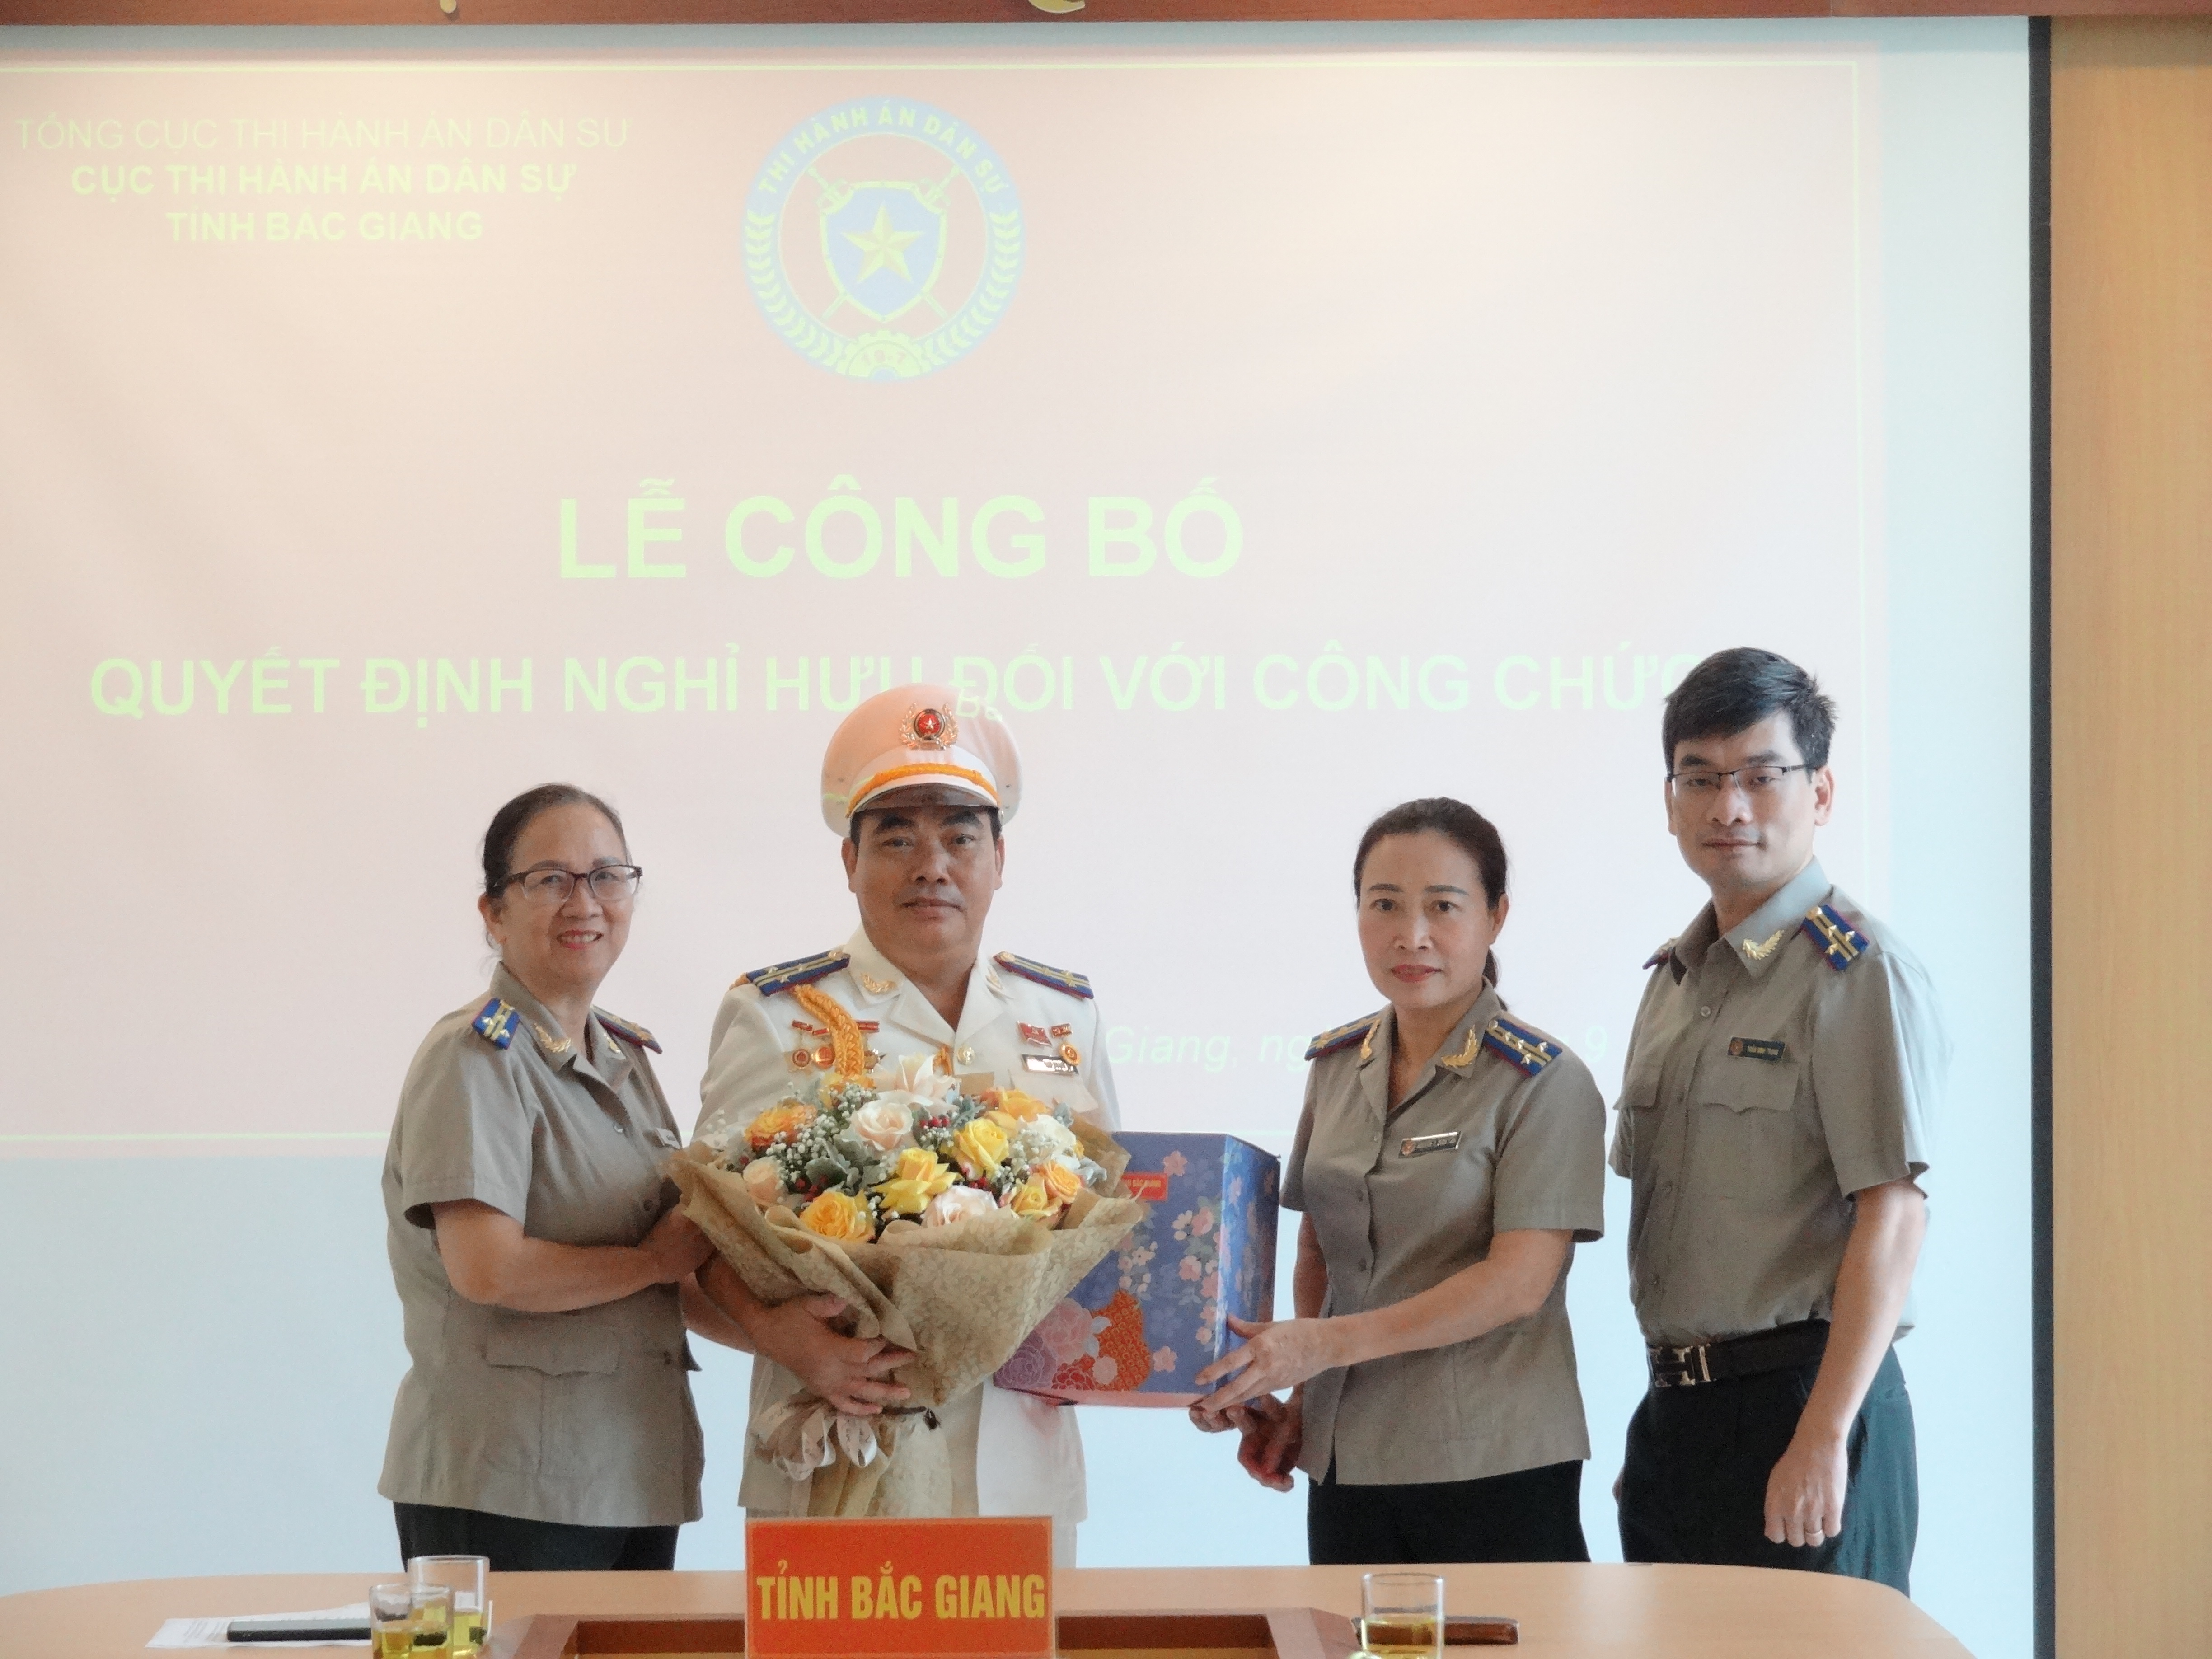 Cục THADS tỉnh Bắc Giang công bố và trao quyết định nghỉ hưu Đối với đồng chí Giáp Hoàng Cự - Phó Cục trưởng